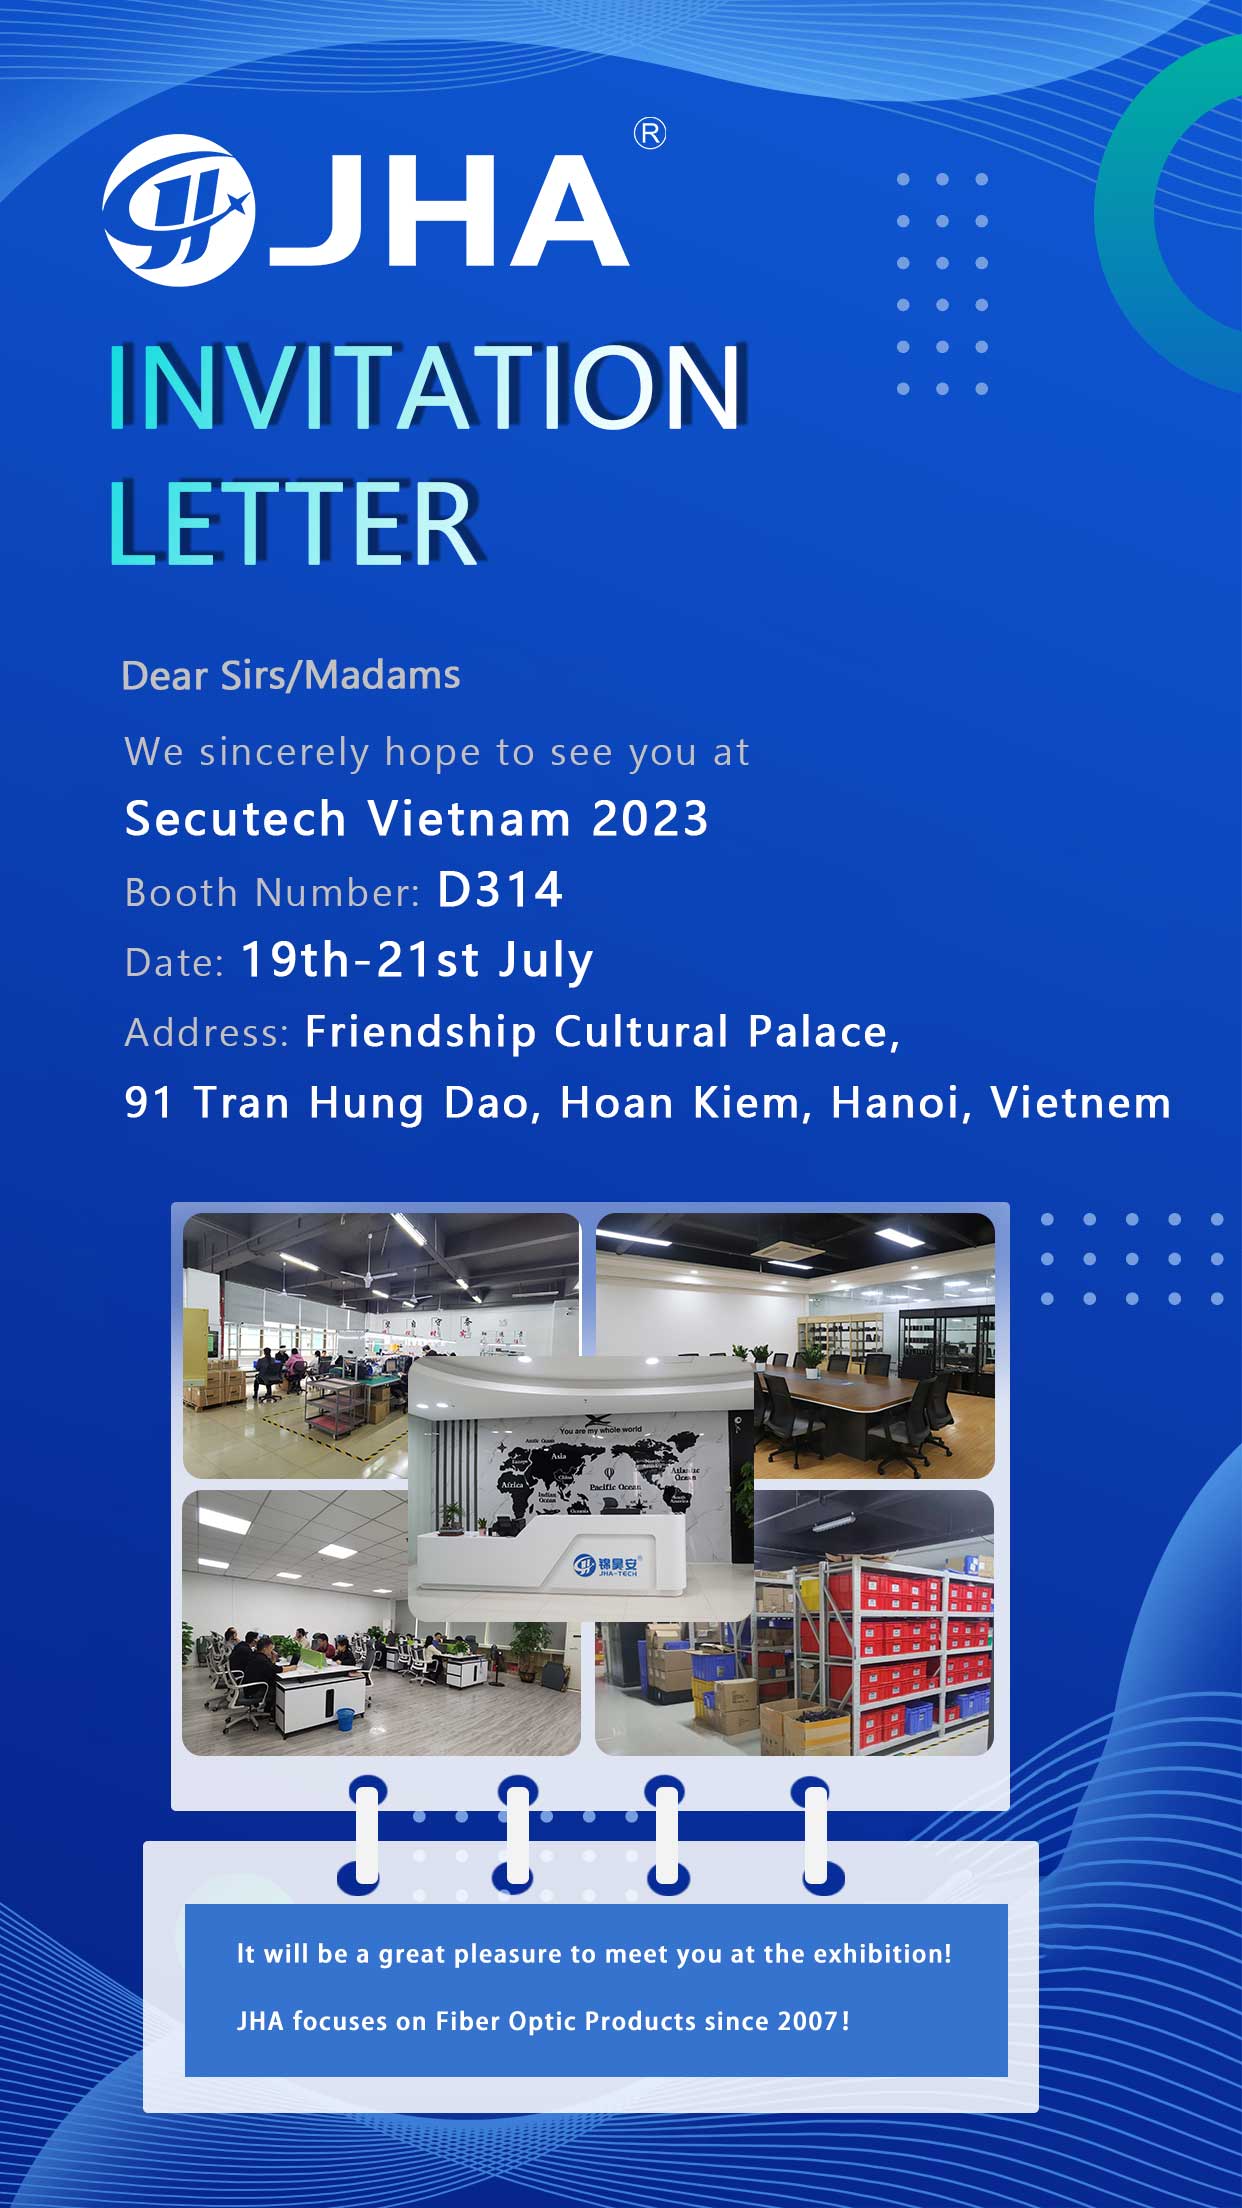 Secutech Vietnam 2023 көрмесінде бізге қосылыңыз – стенд нөмірі D314